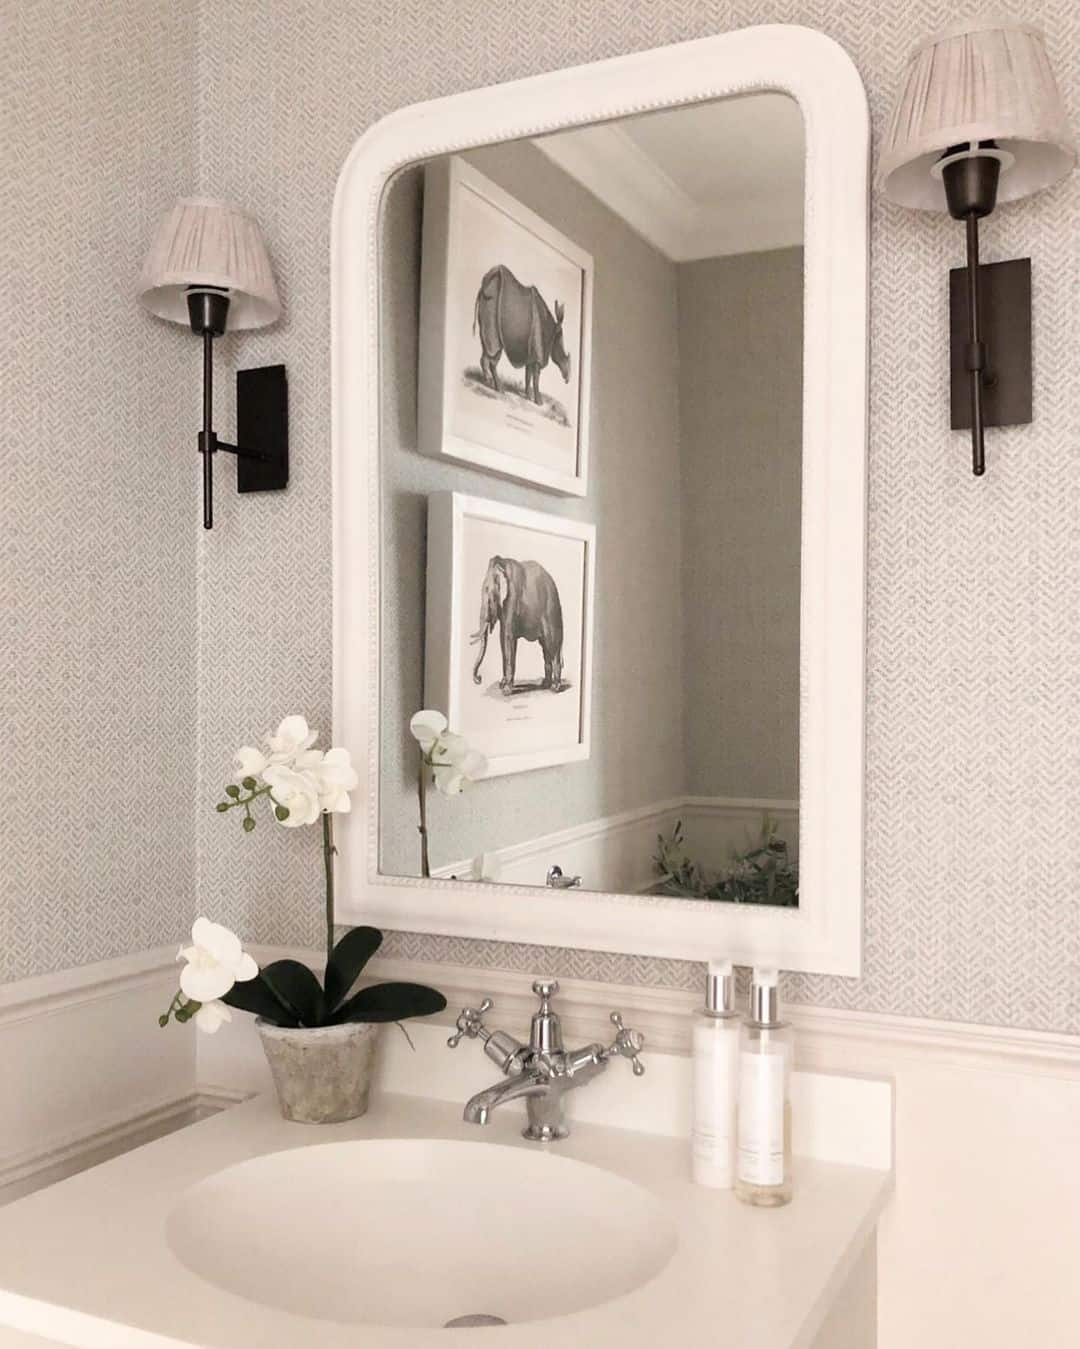 Bathroom Vanity Mirror Ideas With Wallpaper Backdrop 